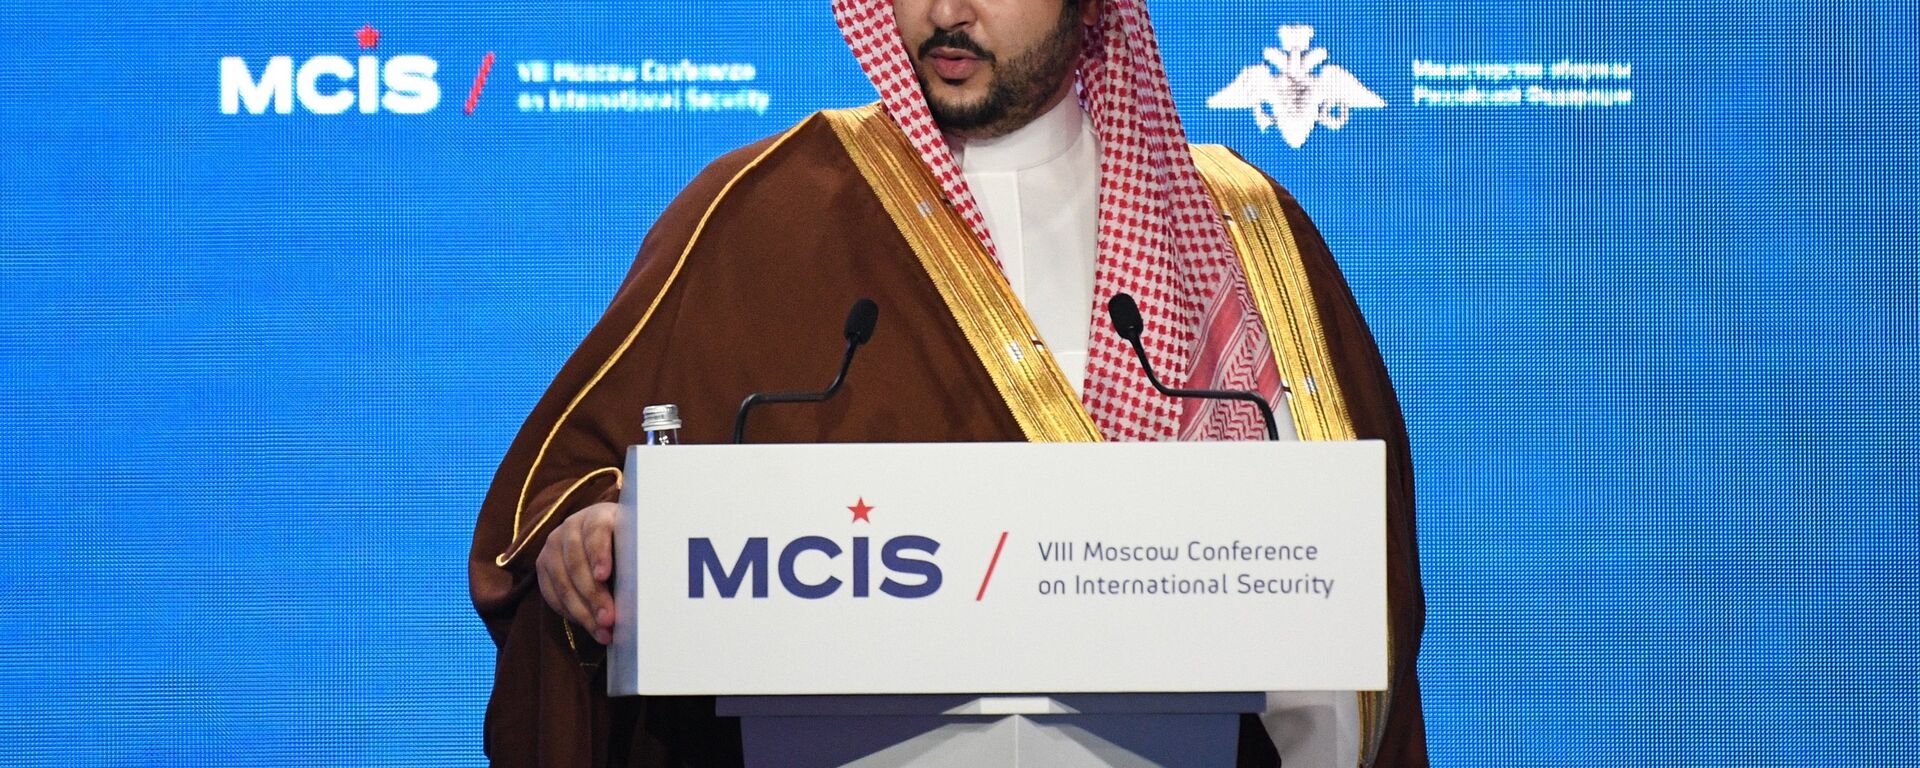  خالد بن سلمان آل سعود، نائب وزير الدفاع السعودي يلقي كلمة في مؤتمر الأمن الدولي الثامن بموسكو (24 أبريل/نيسان 2019) - سبوتنيك عربي, 1920, 21.05.2022